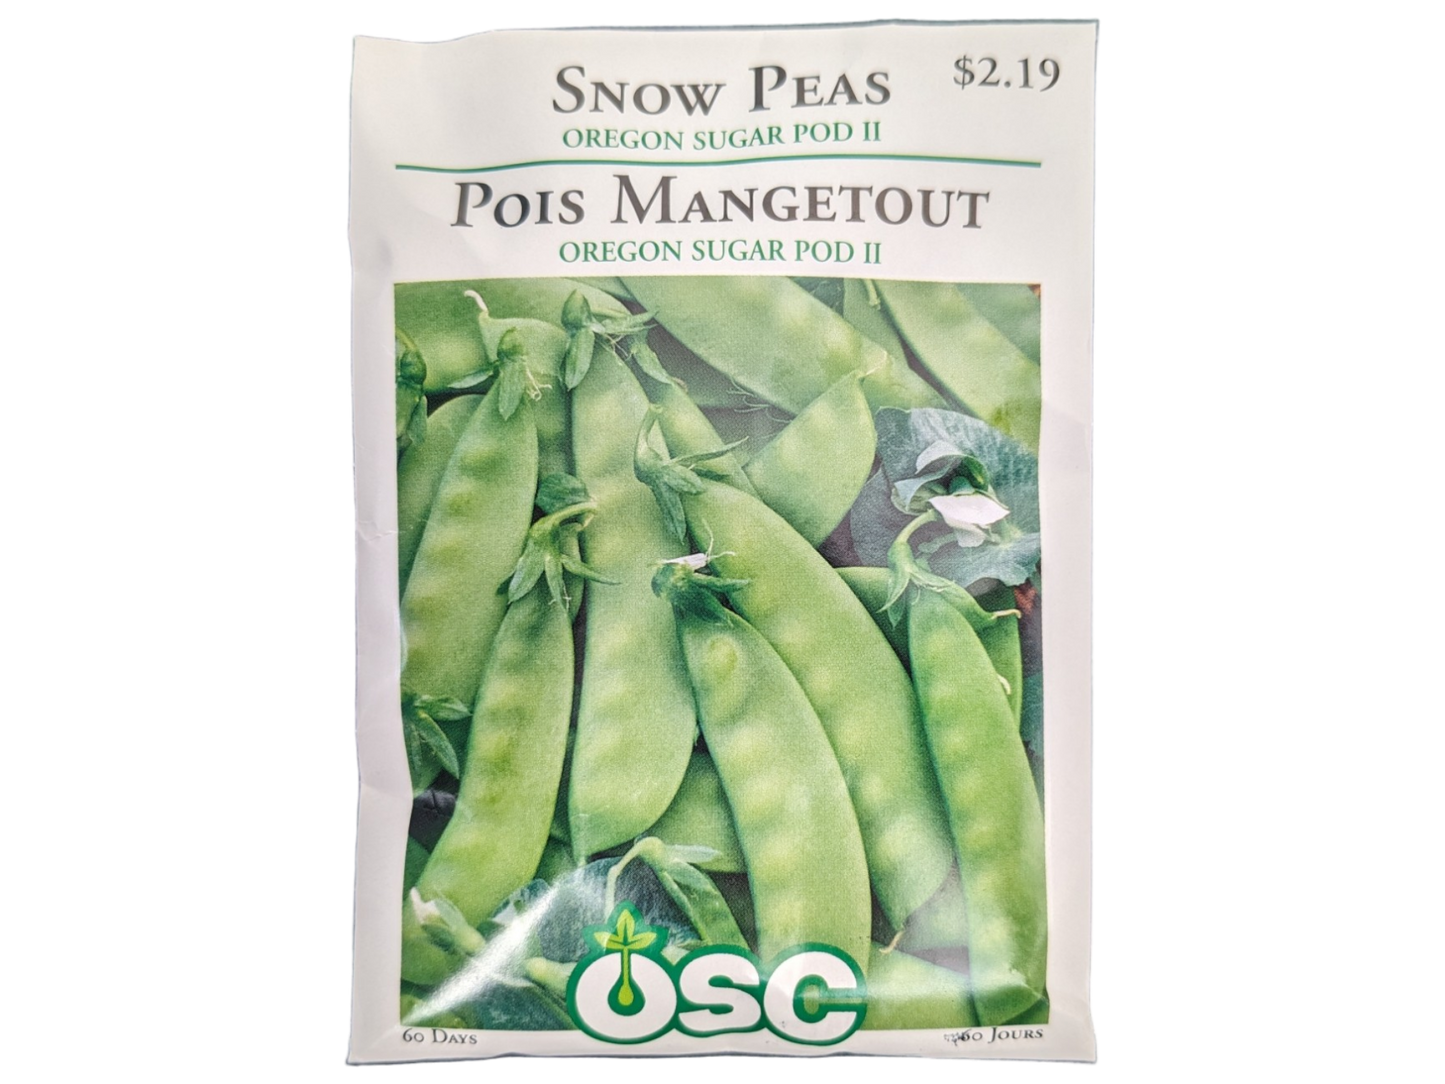 Snow Peas Oregon Sugar Pod II